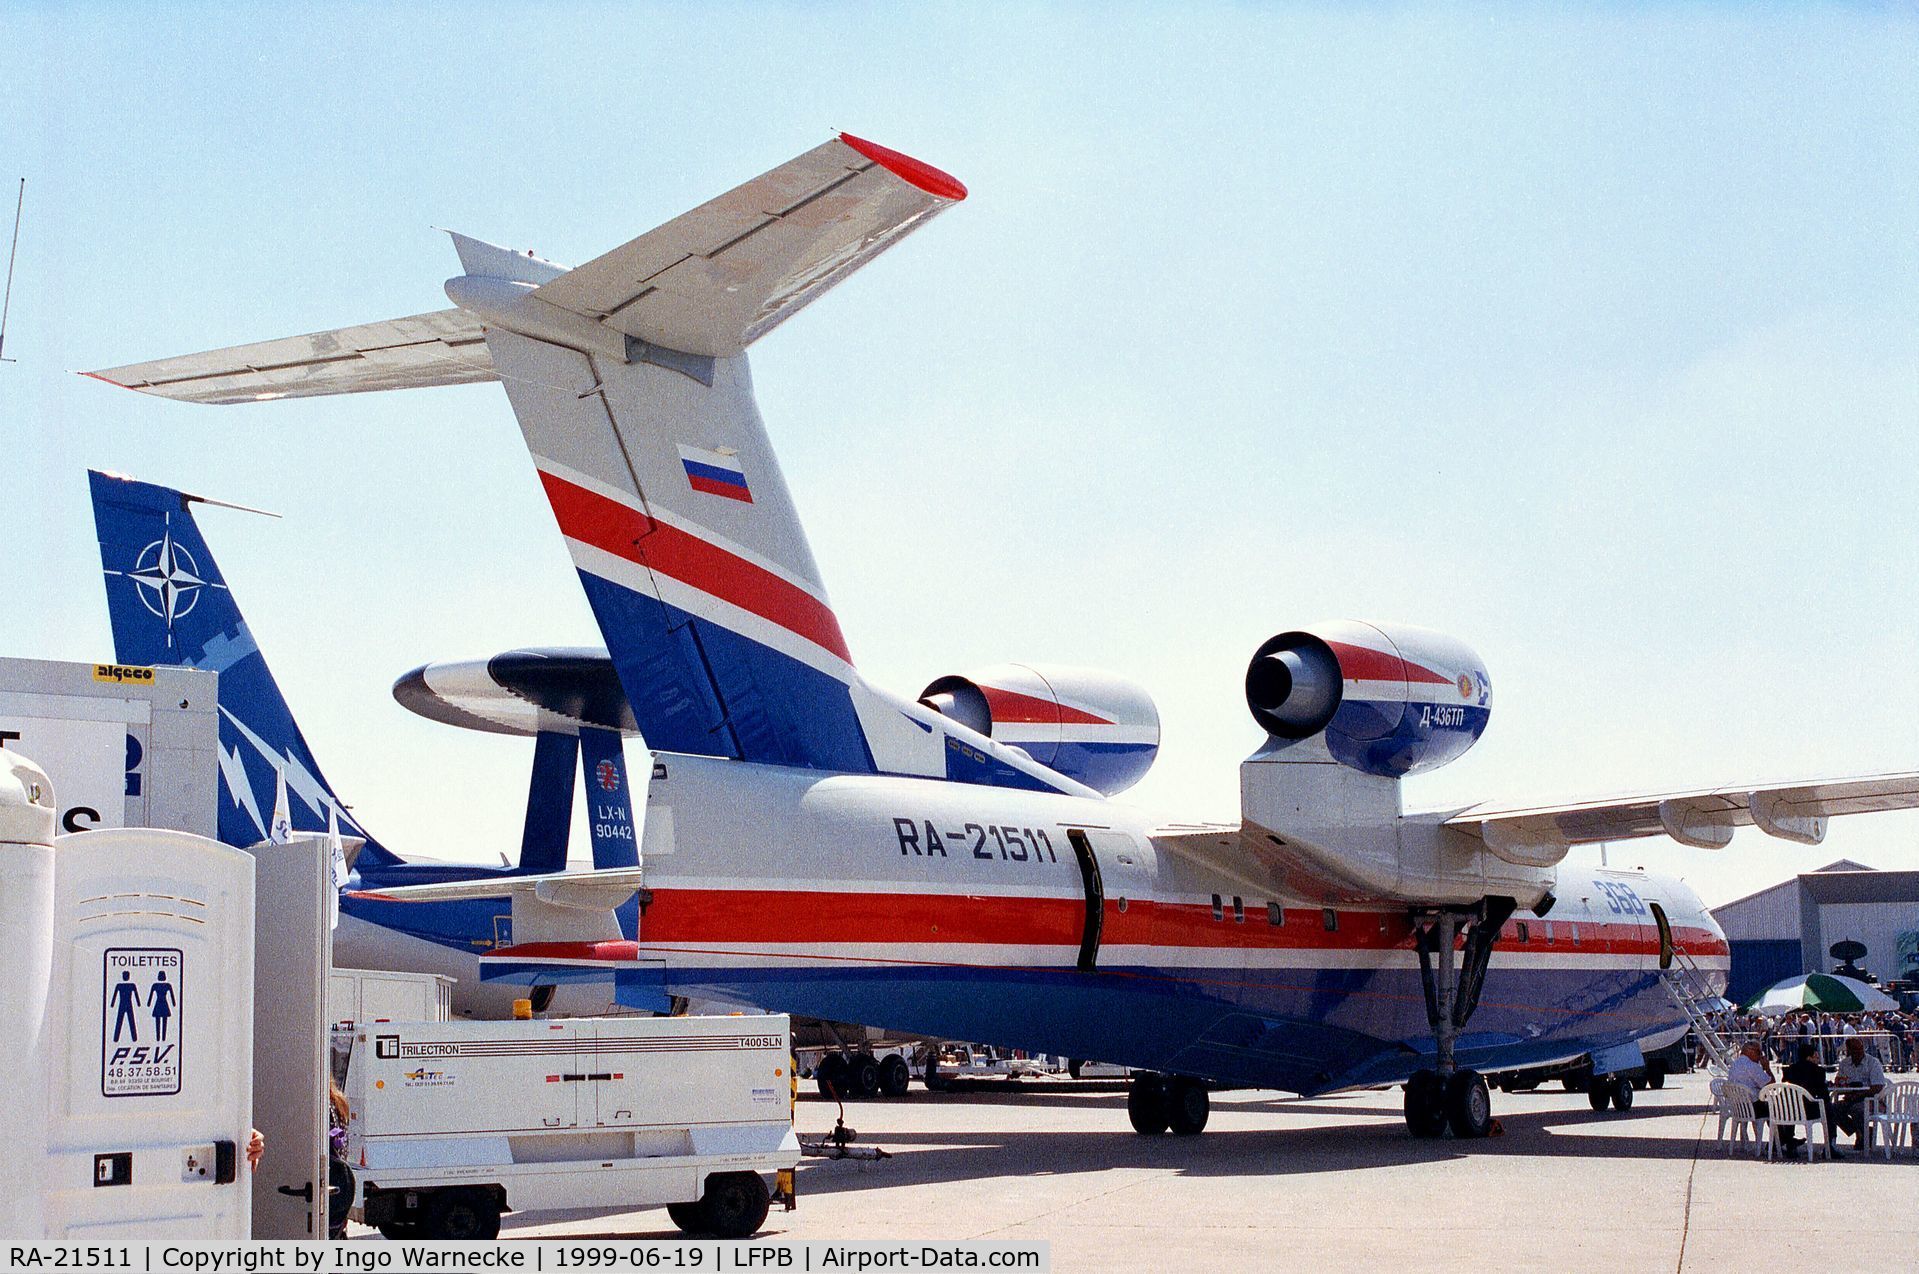 RA-21511, Beriev Be-200 C/N 7682000002, Beriev Be-200 at the Aerosalon 1999, Paris